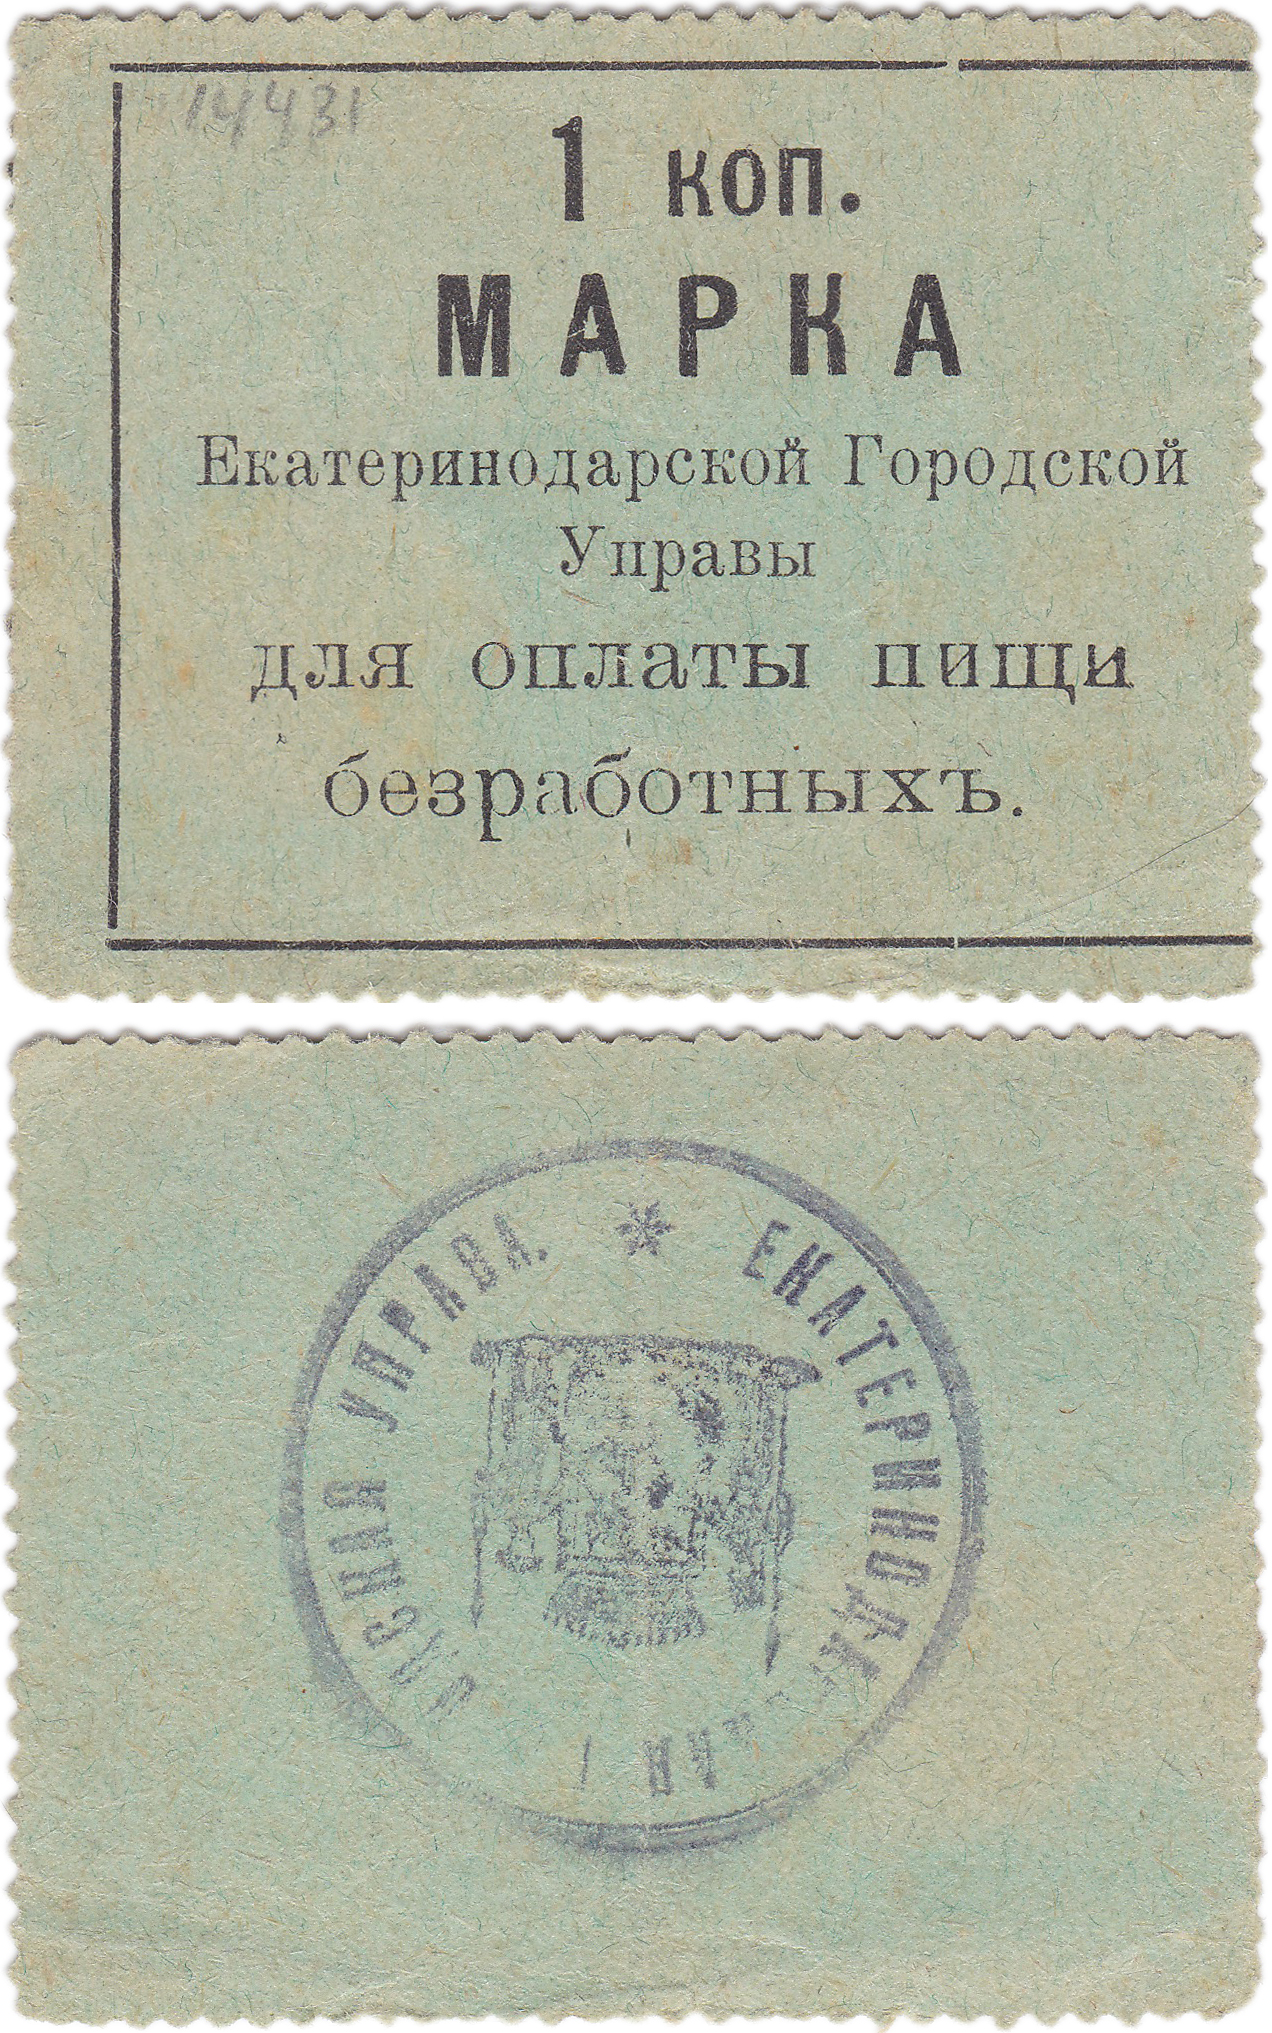 Марка 1 Копейка для оплаты пищи безработных 1910 год. Екатеринодарская городская управа